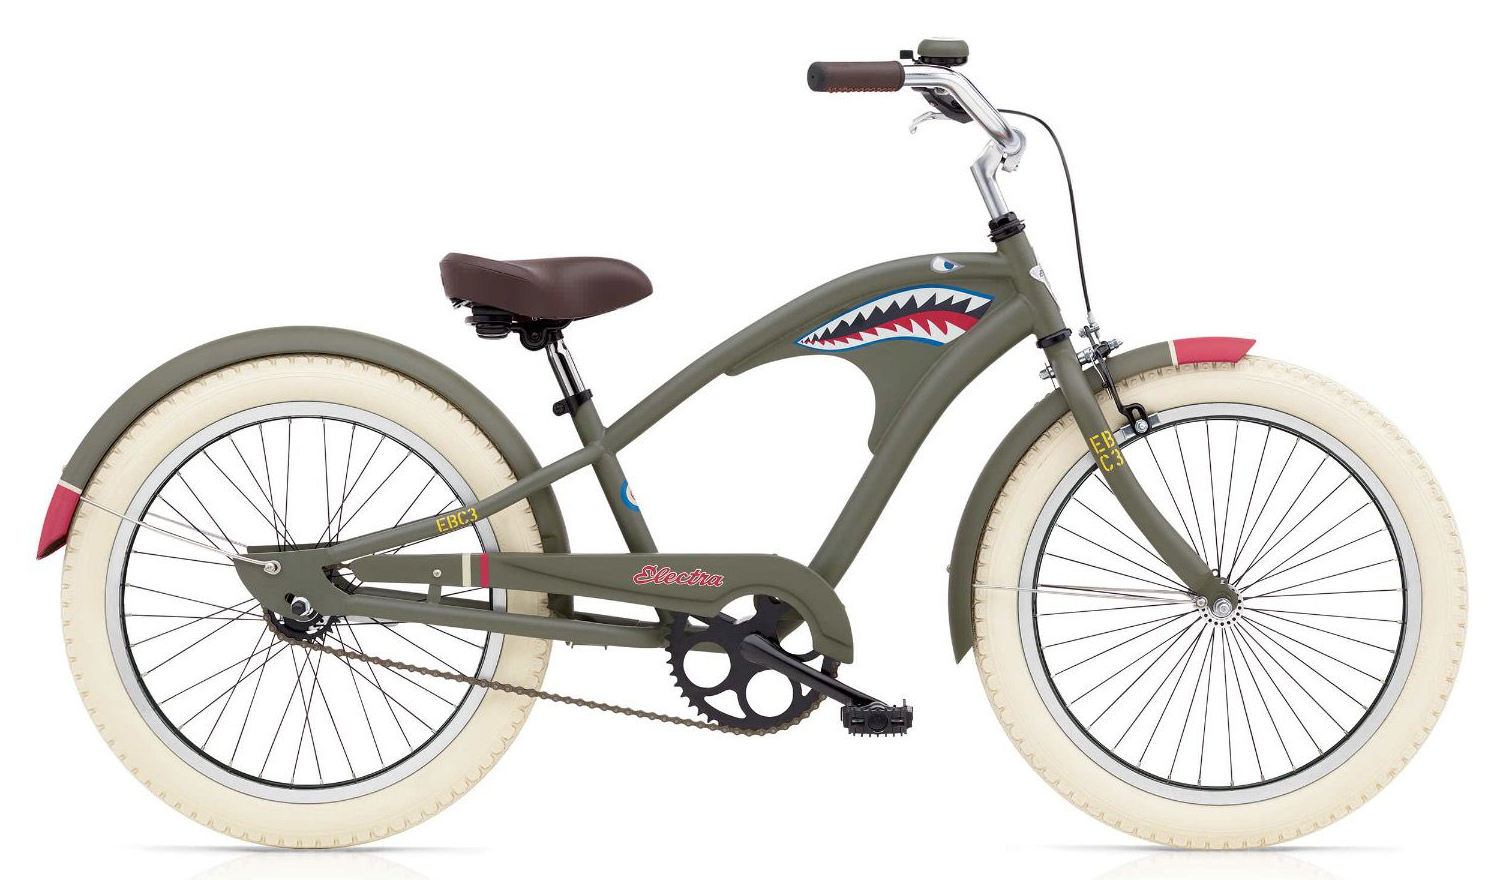  Велосипед Electra Tiger Shark 1 '20 2019